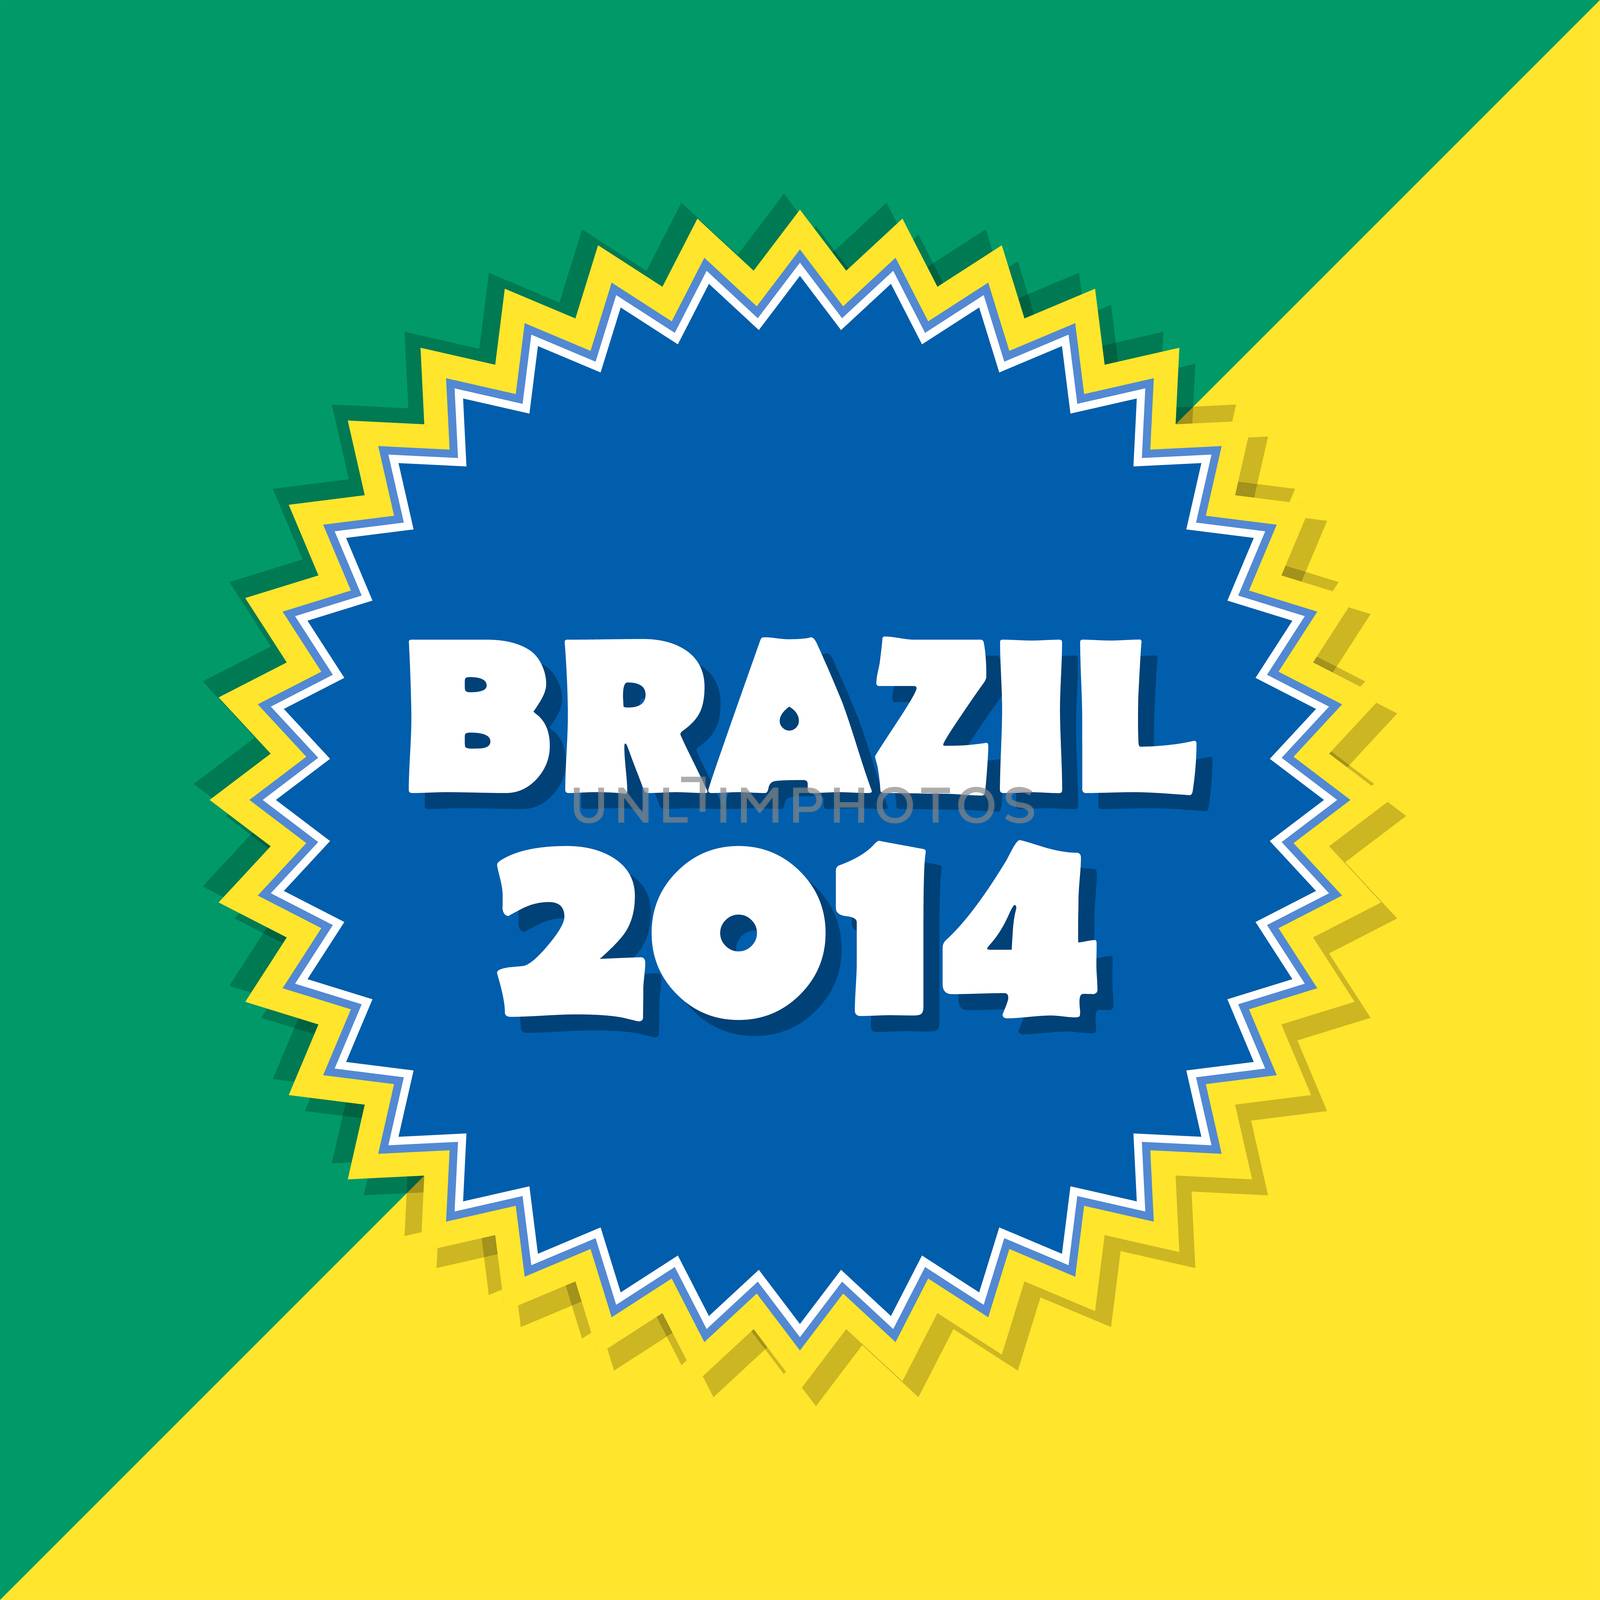 Brazil 2014, retro label by marinini